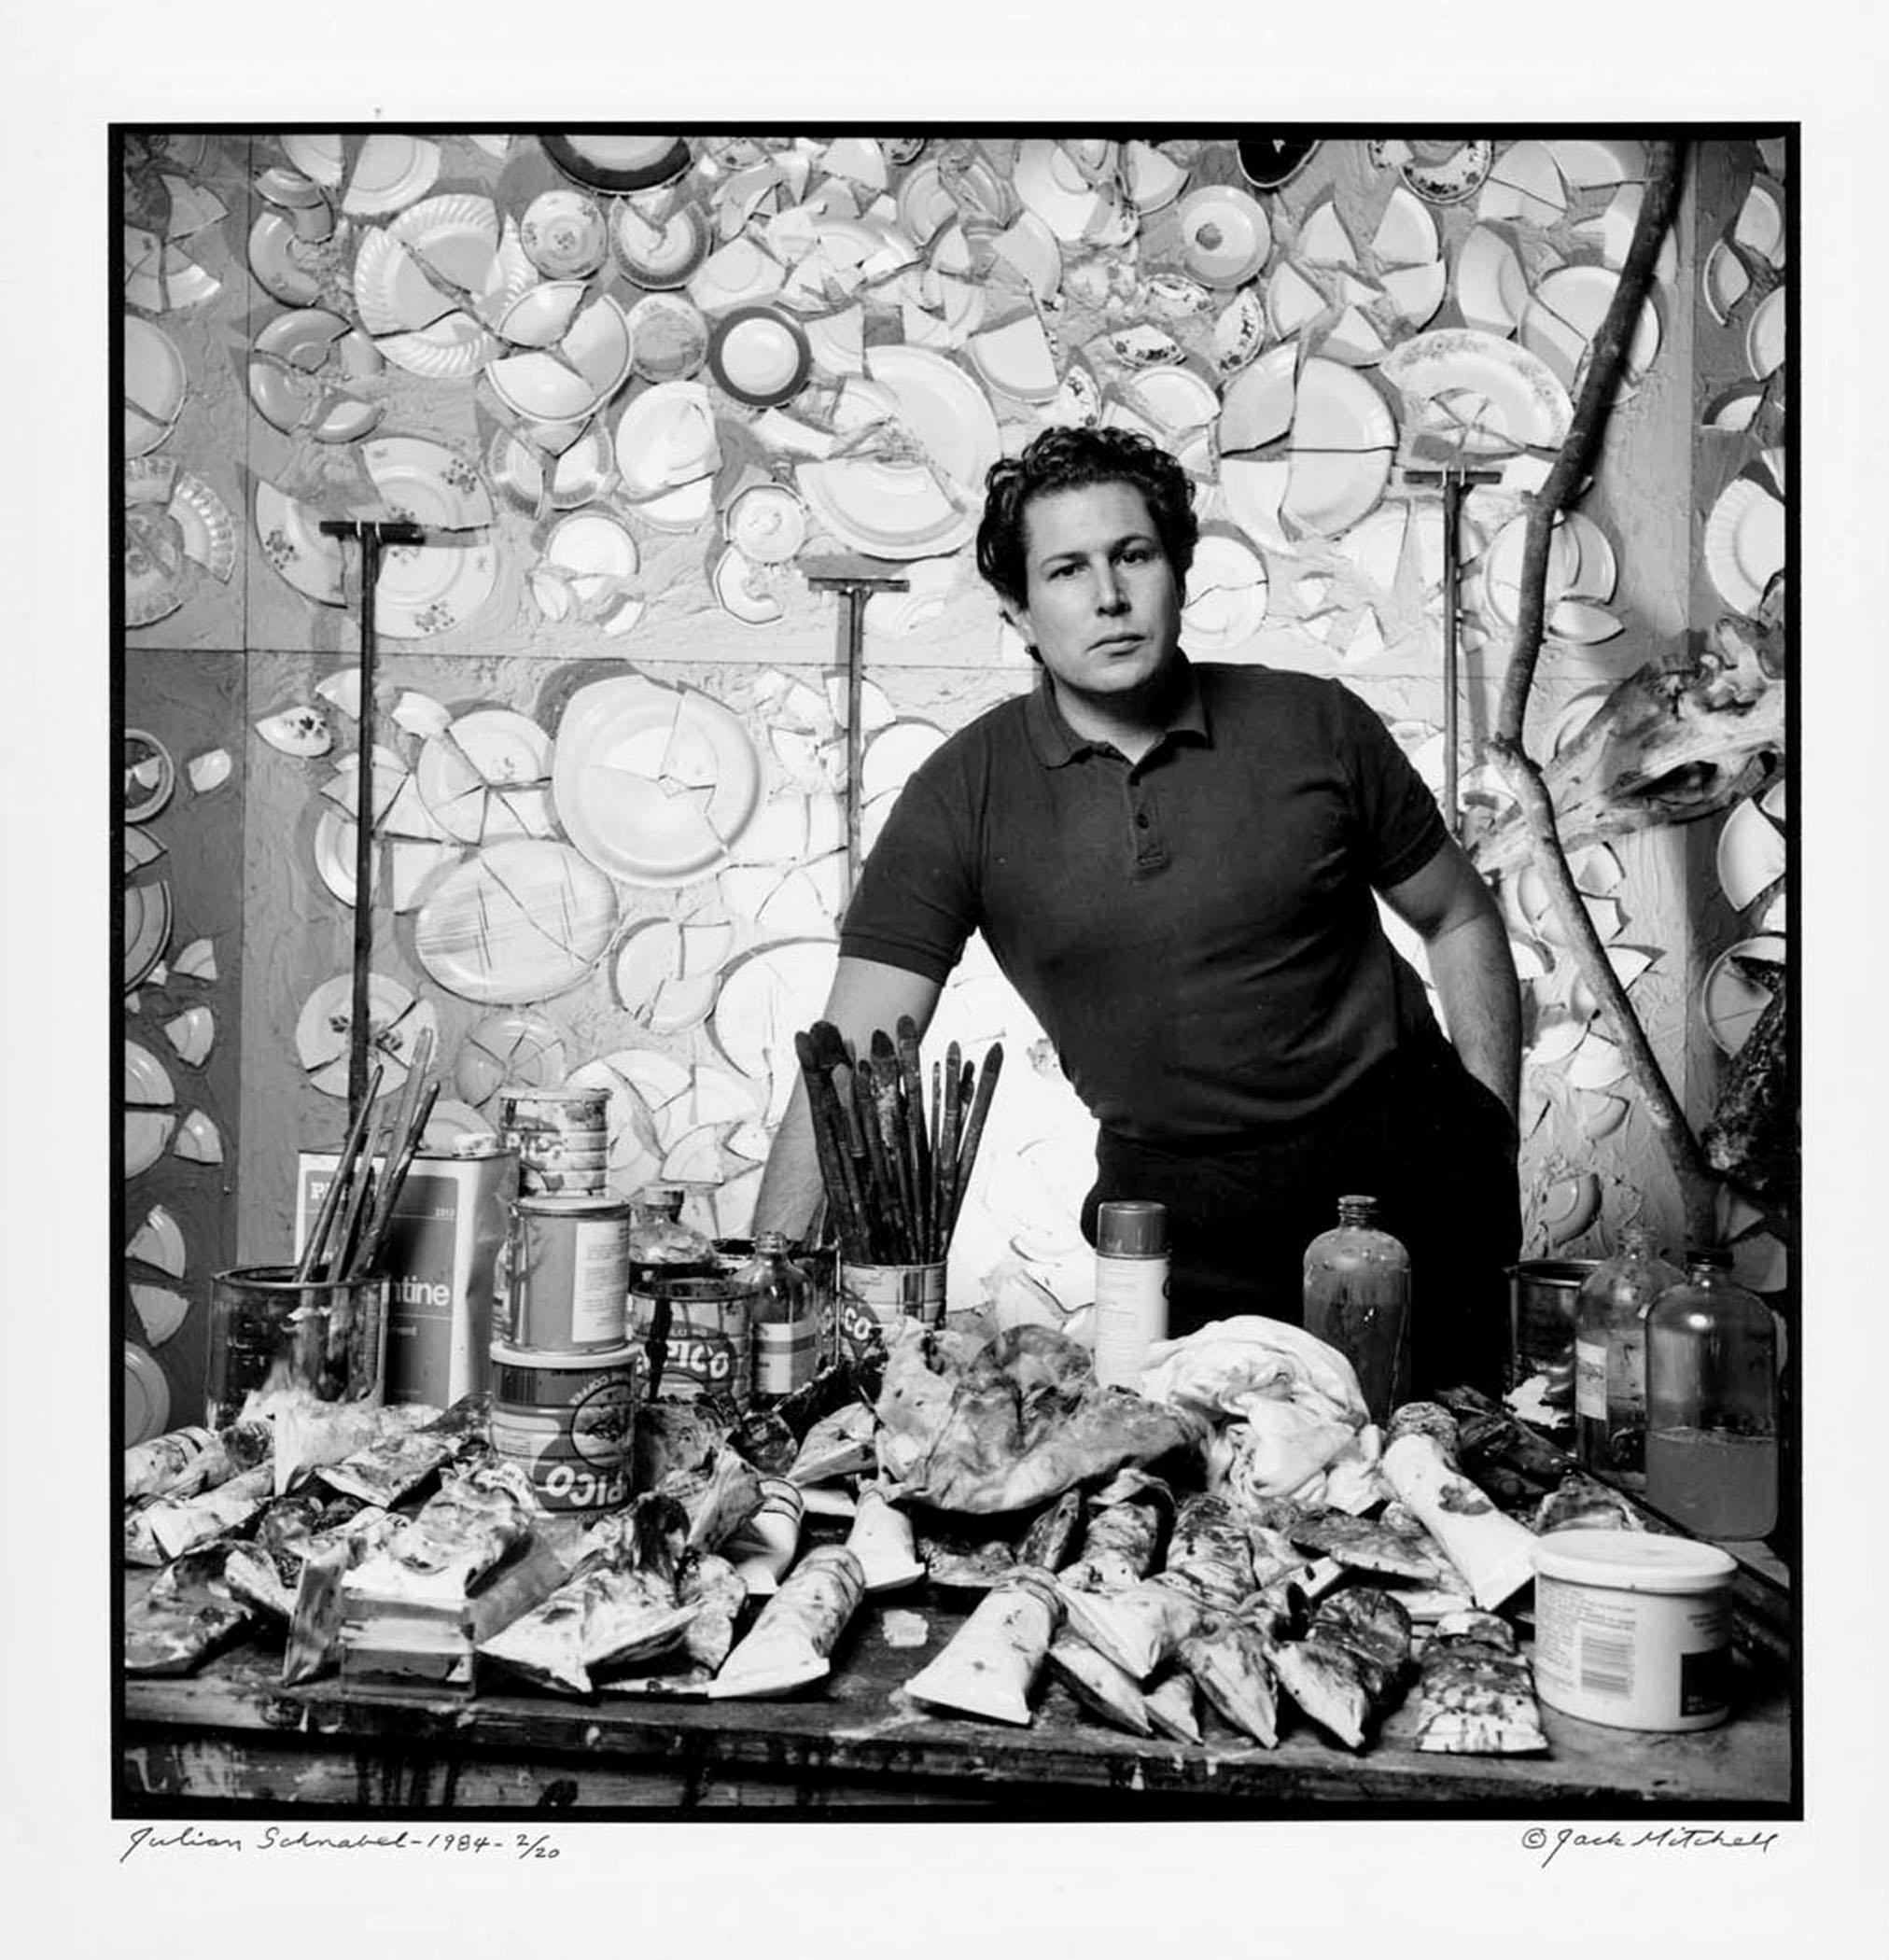 11 x 14" alte Silbergelatinefotografie des Künstlers Julian Schnabel  in seinem Atelier, 1986.  Nummeriert 2/20 und signiert von Jack Mitchell auf der Rückseite des Drucks. Kommt direkt aus dem Jack Mitchell Archiv mit einem